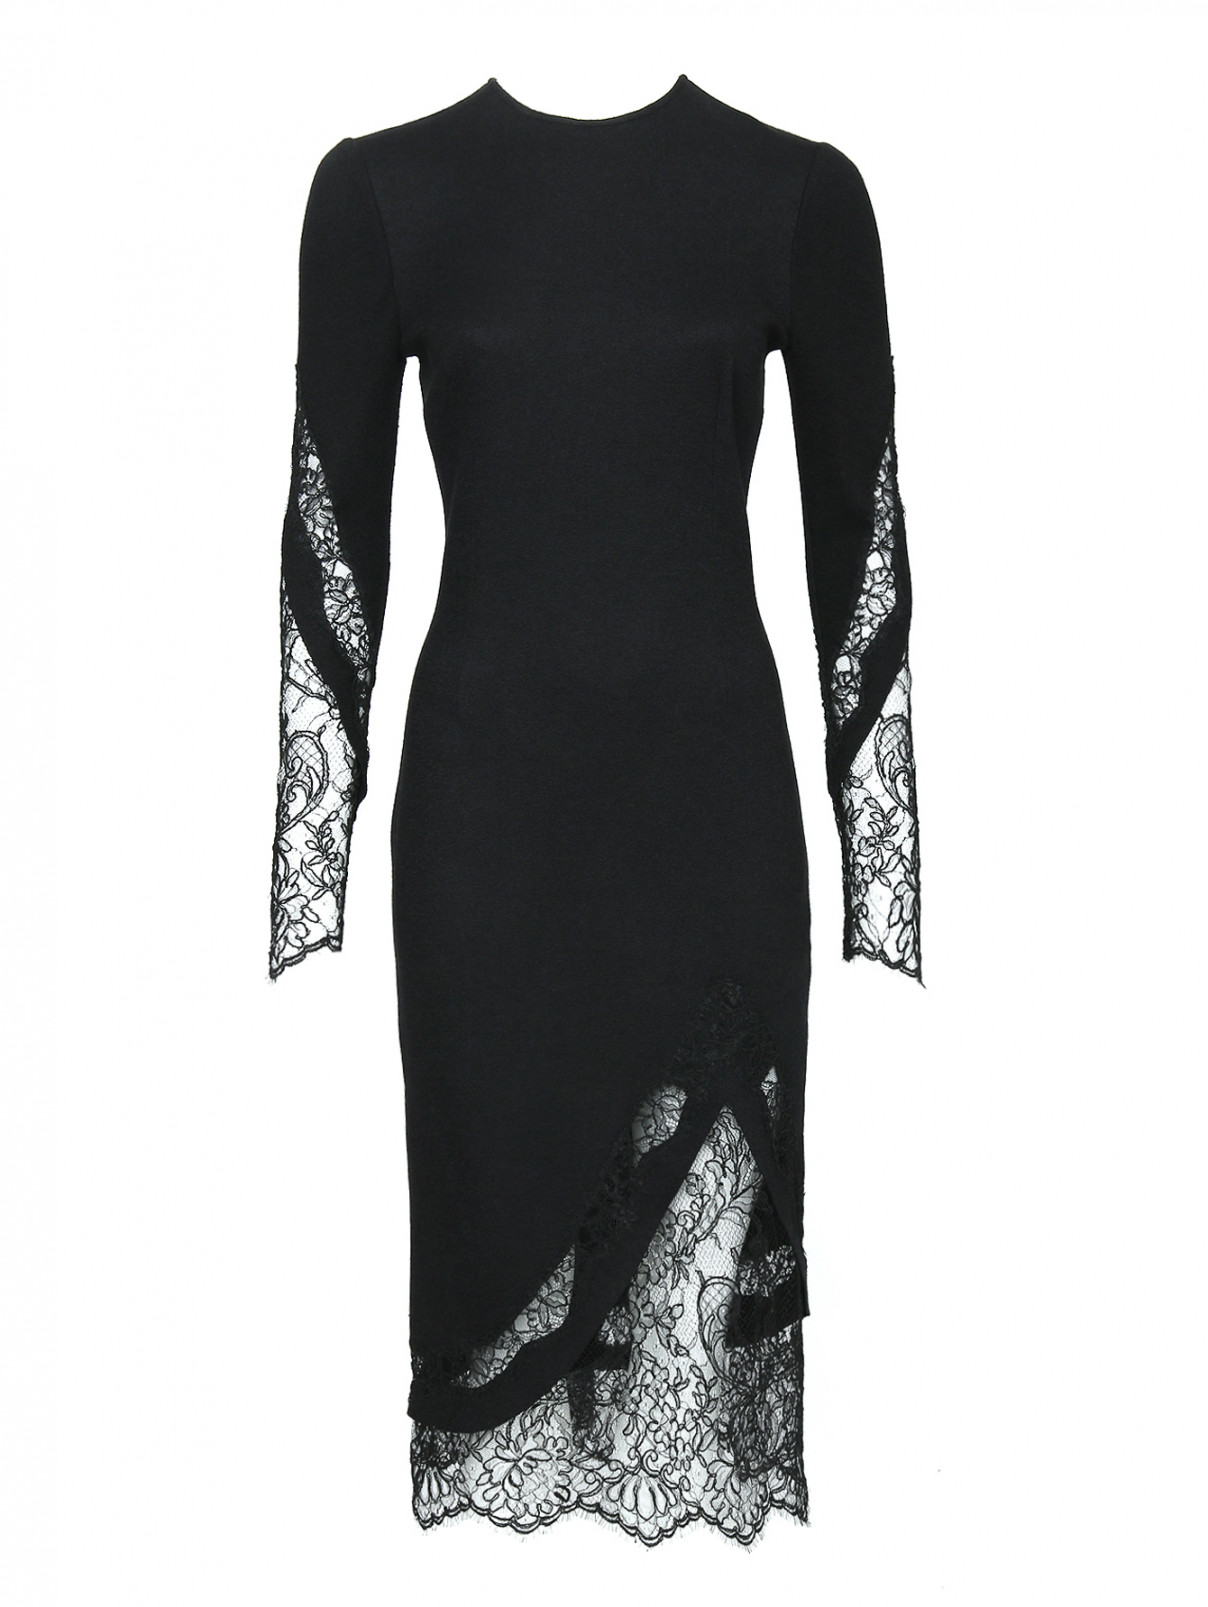 Платье из шерсти, шелка и кашемира с кружевом Ermanno Scervino  –  Общий вид  – Цвет:  Черный